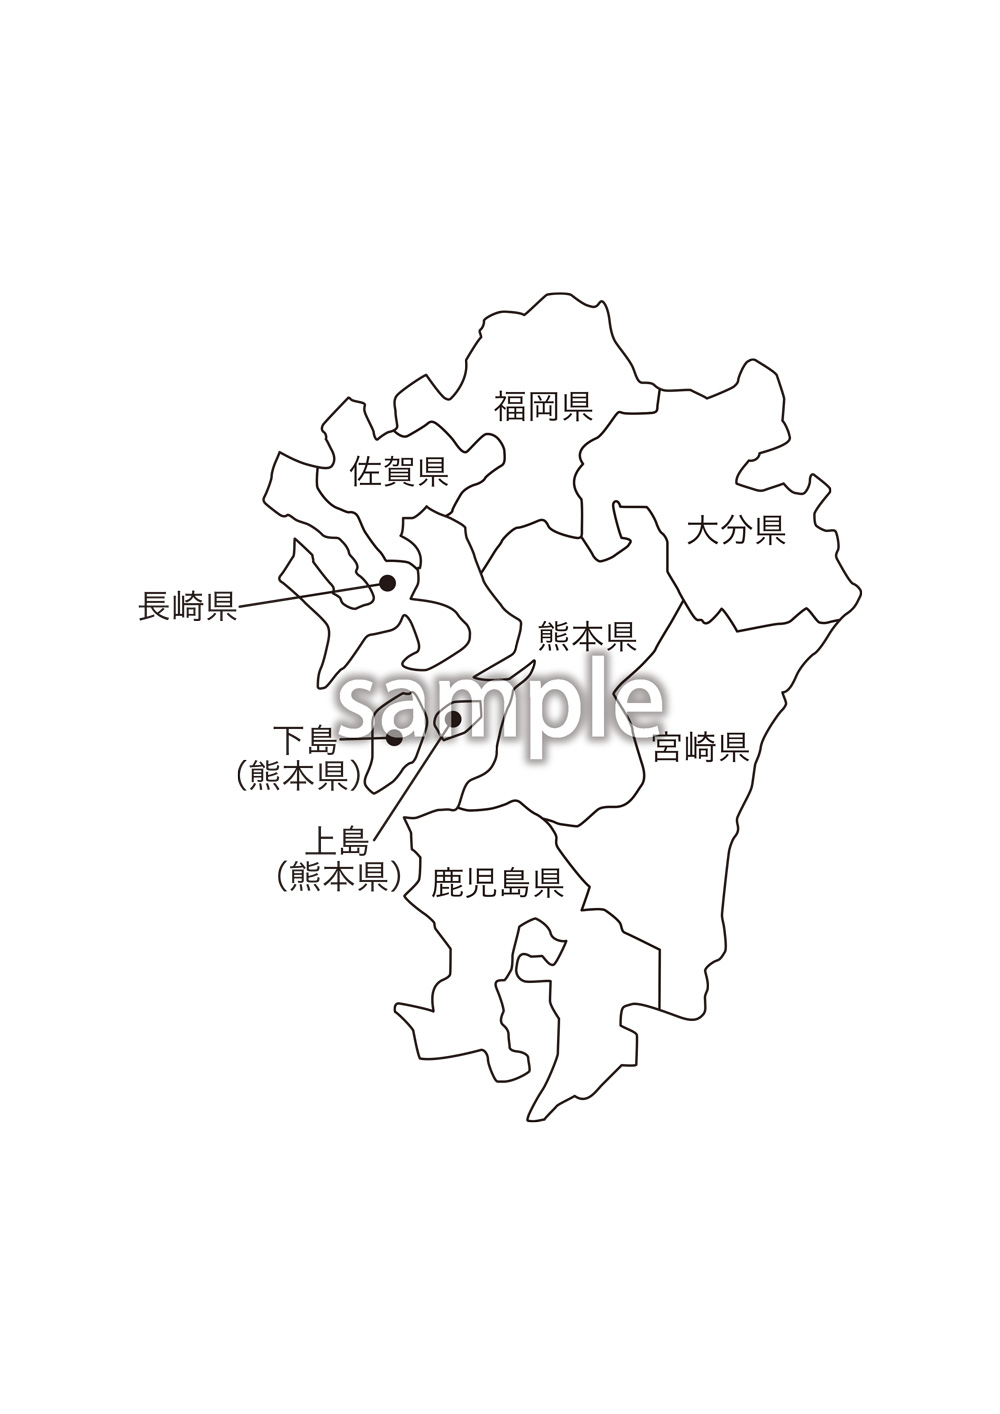 一般社団法人クリエイターズの素材集 九州地方都道府県名入り地図の素材をjpg Png形式でダウンロードできます 会員限定のコンテンツです